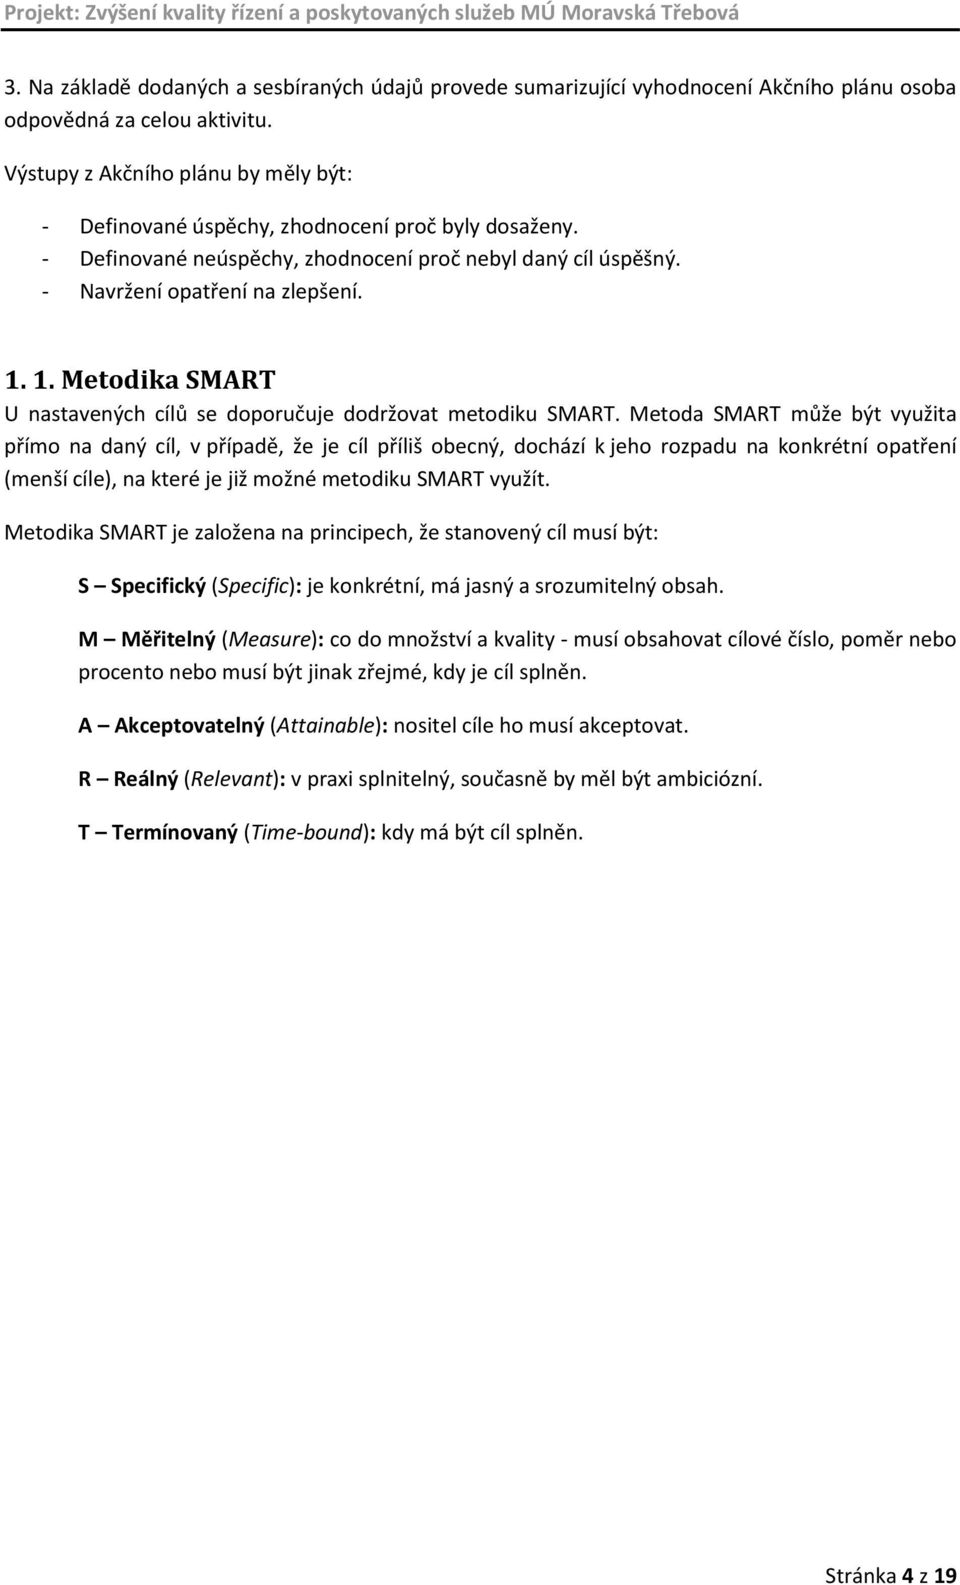 1. Metodika SMART U nastavených cílů se doporučuje dodržovat metodiku SMART.